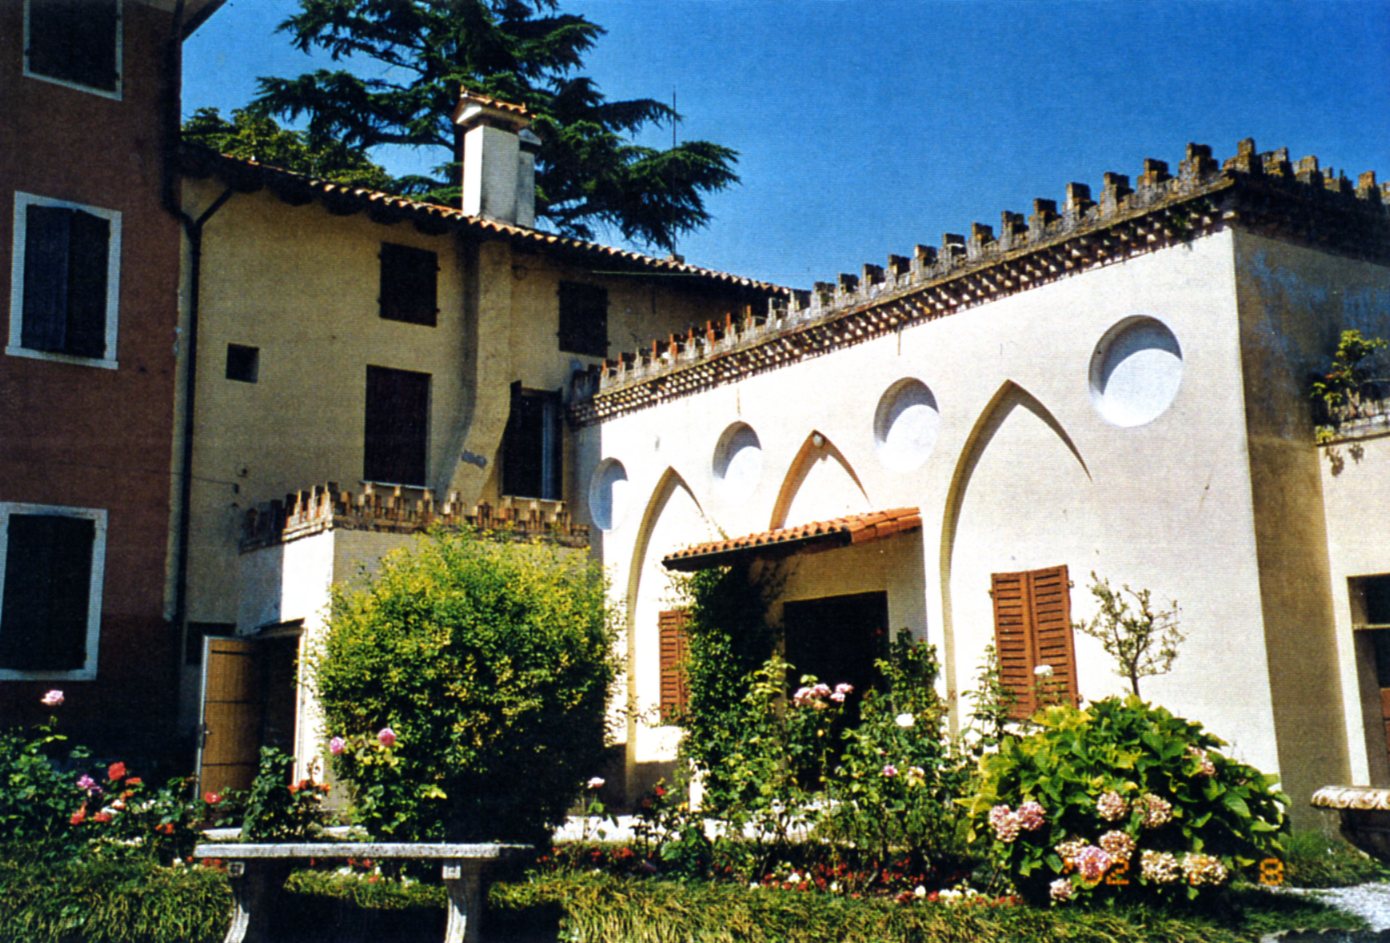 Annessi nord - Complesso di Villa Bornancini (barchessa) - Cinto Caomaggiore (VE) 